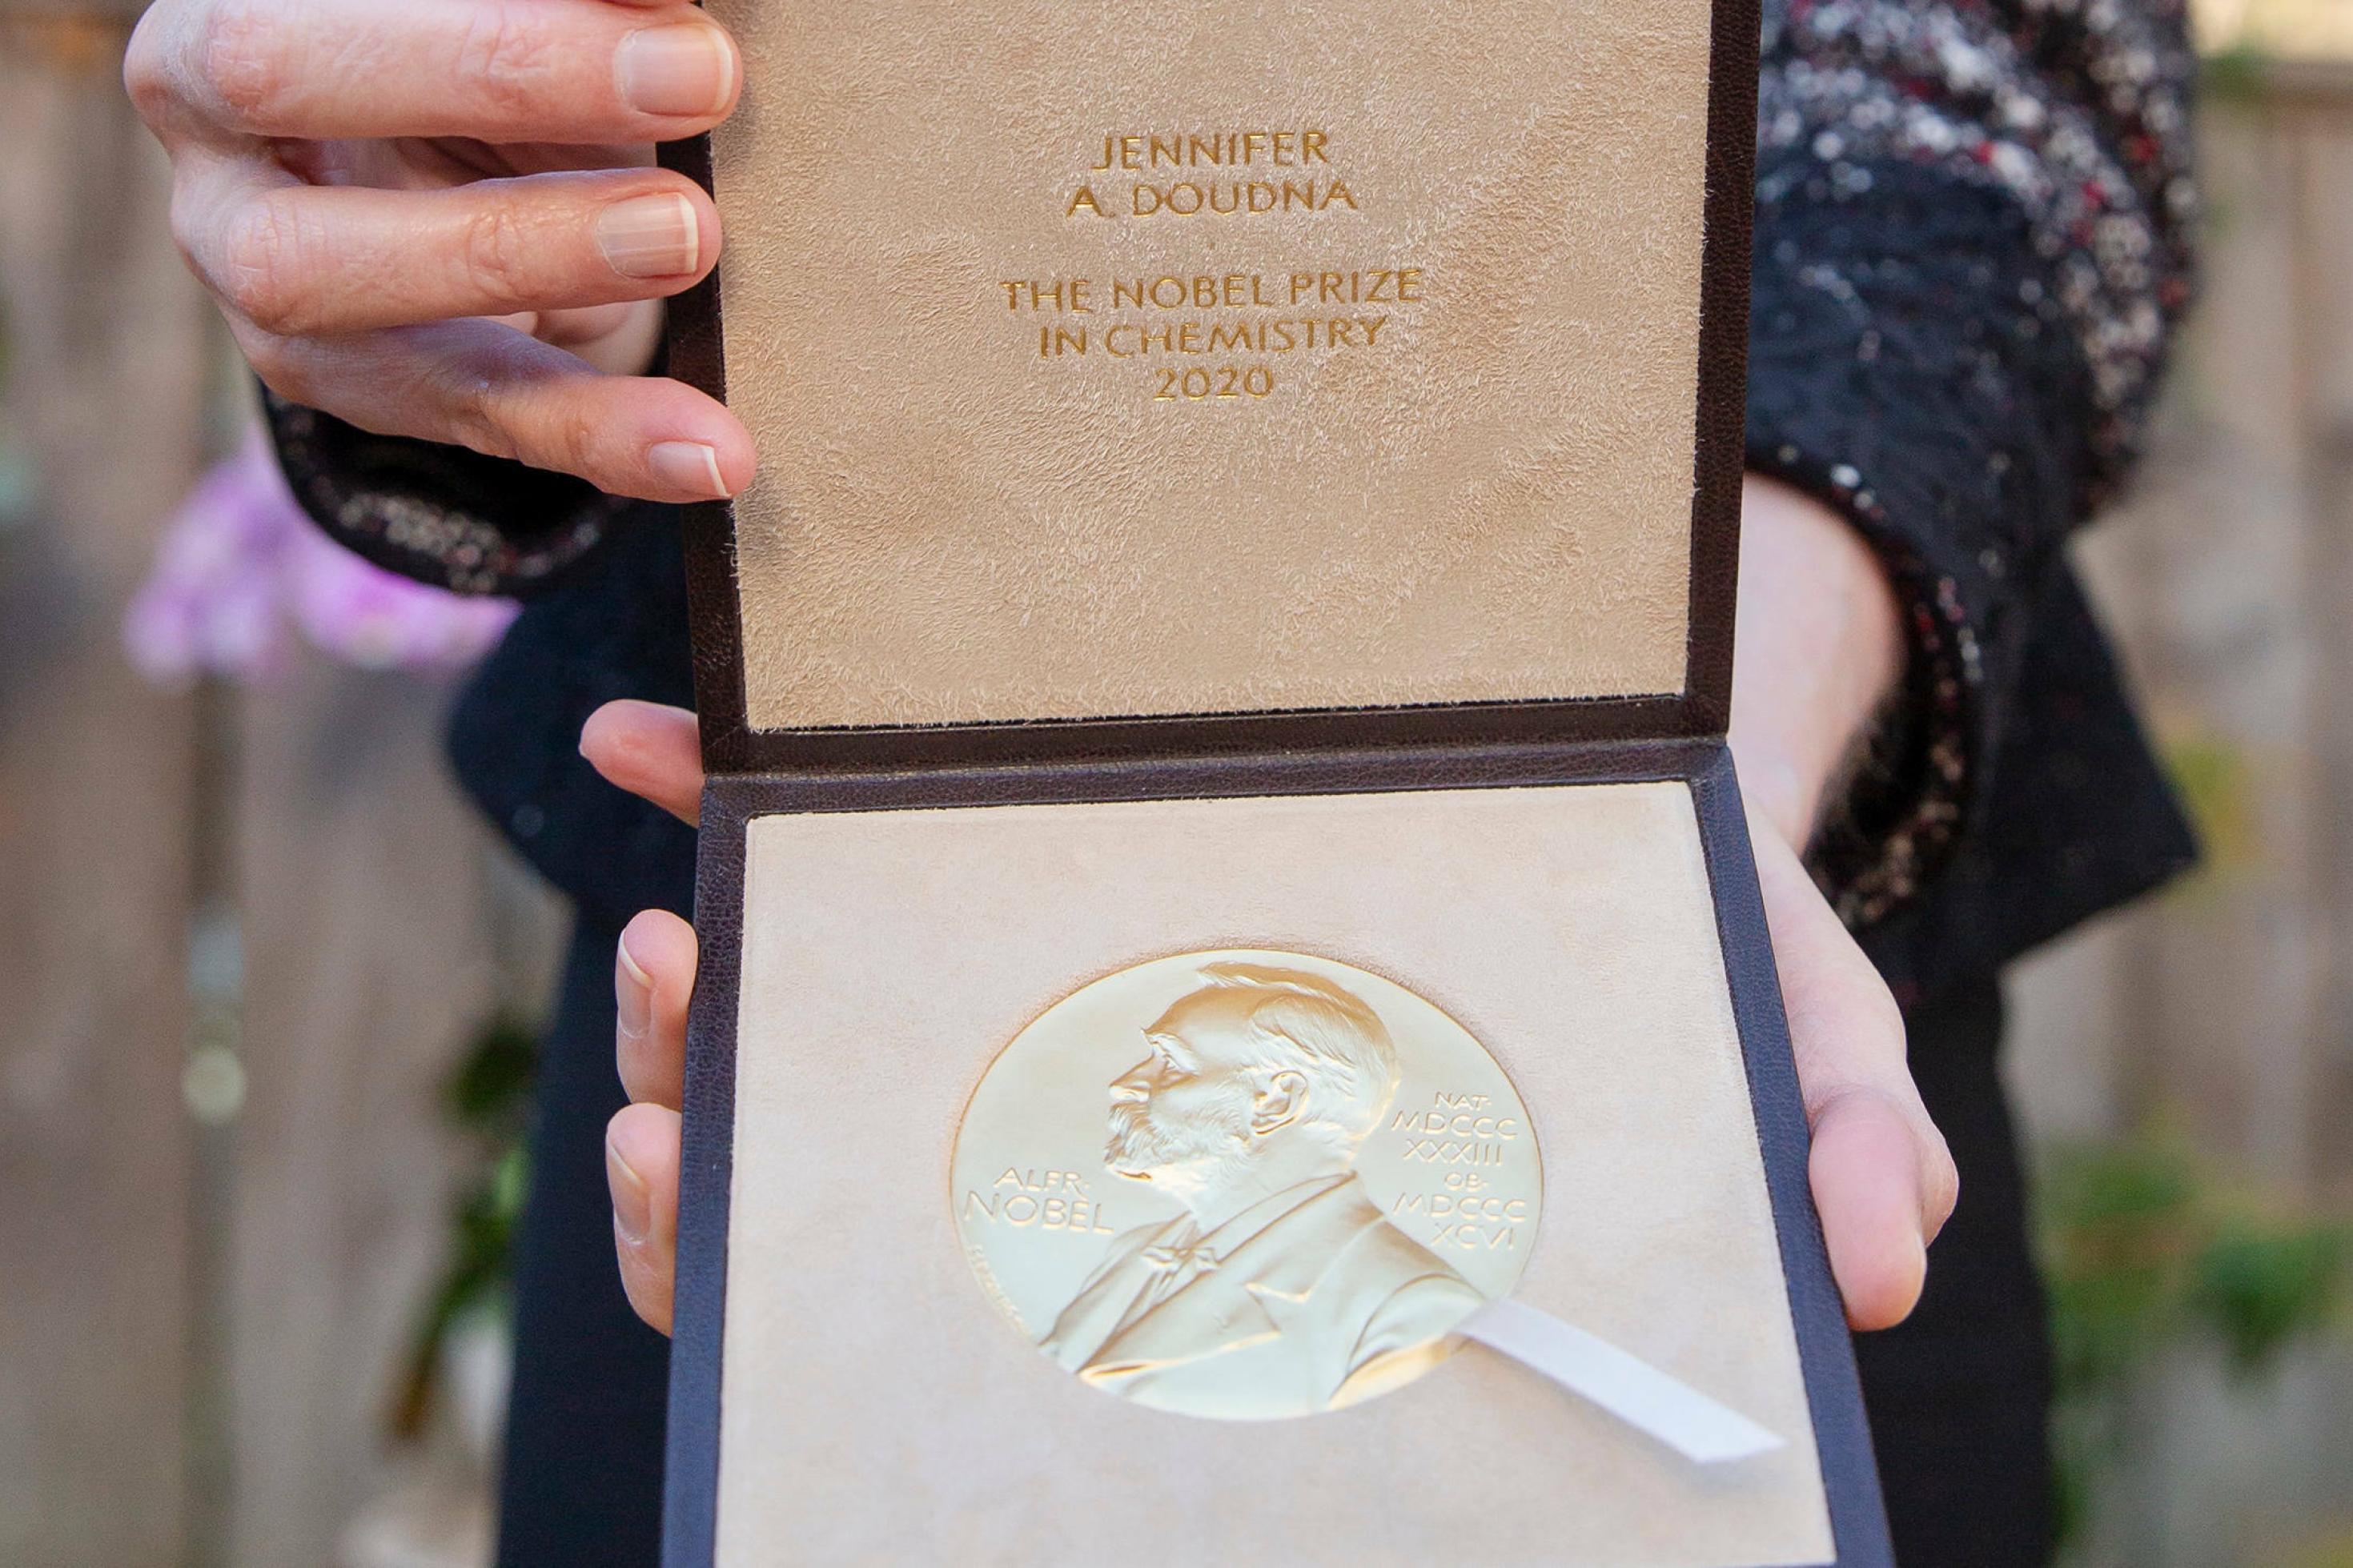 Die Nobelpreis-Medaille für Preisträgerin Jennifer A. Doudna in der Kategorie Chemie am 8. Dezember 2020